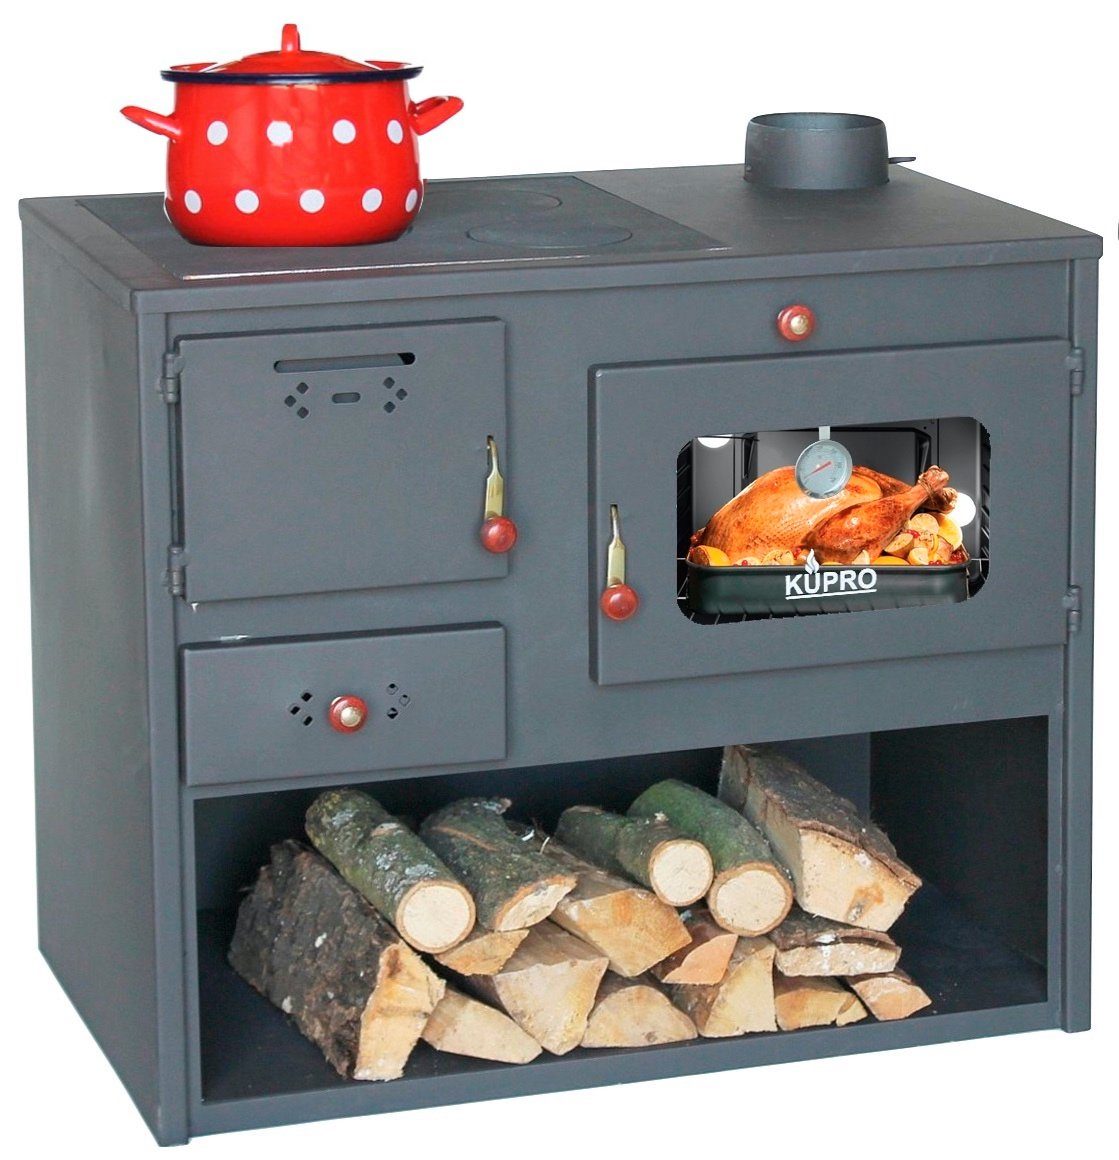 DanDiBo Grillkamin Outdoor Kaminofen mit Backfach und Herdplatte Gartenofen  Küche Ofen, 7,56 kW